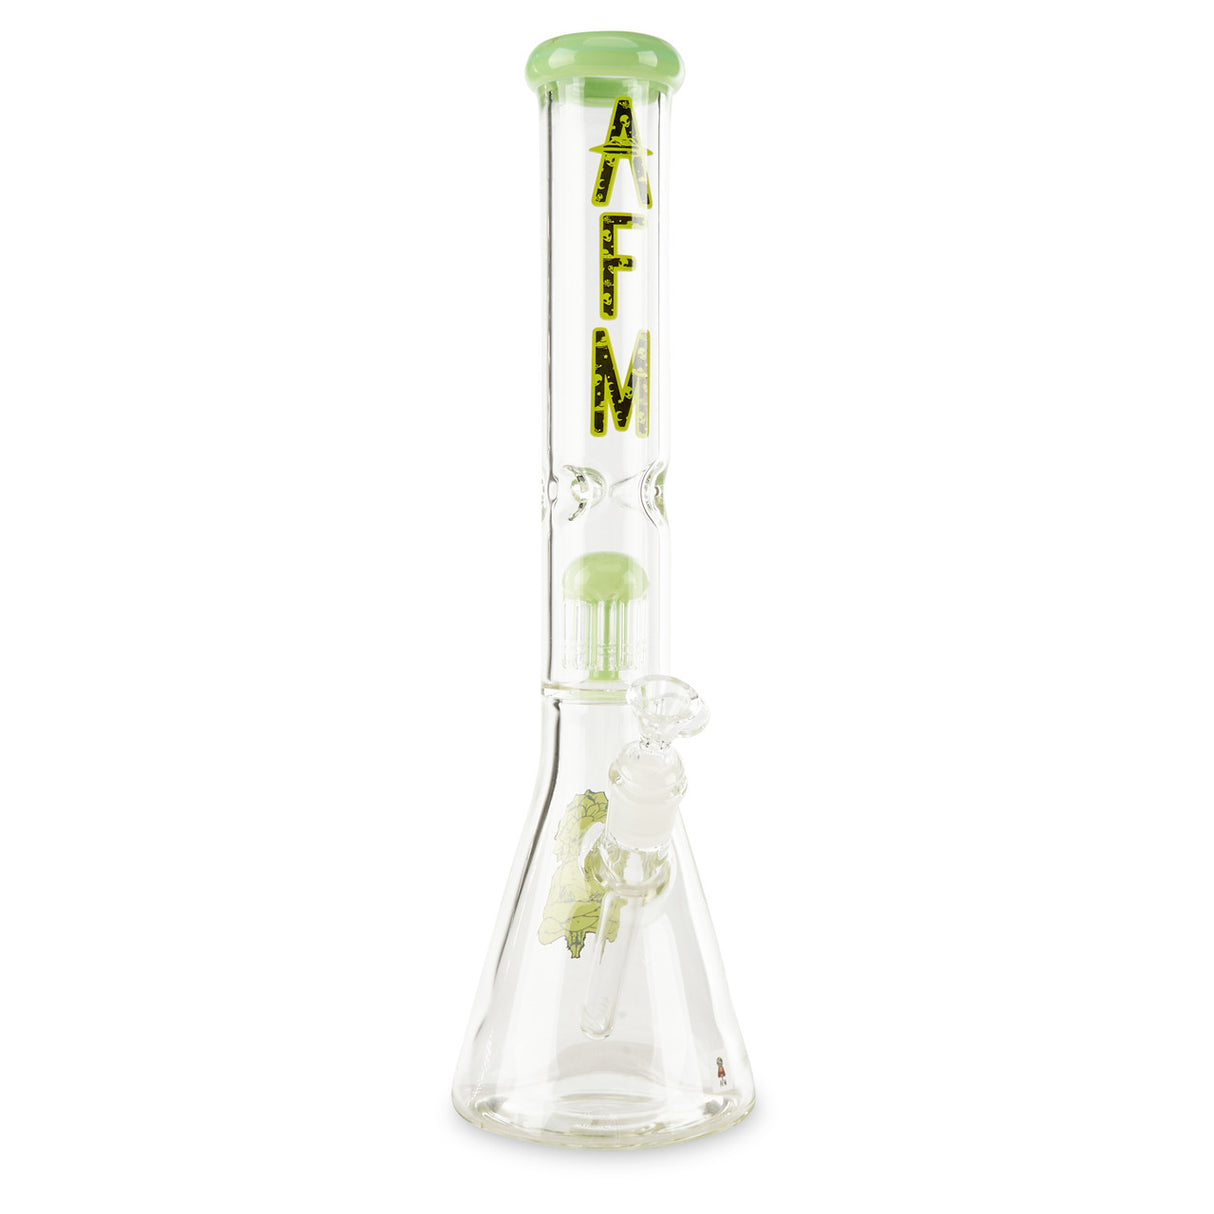 Slime AFM Single Tree 9mm Beaker